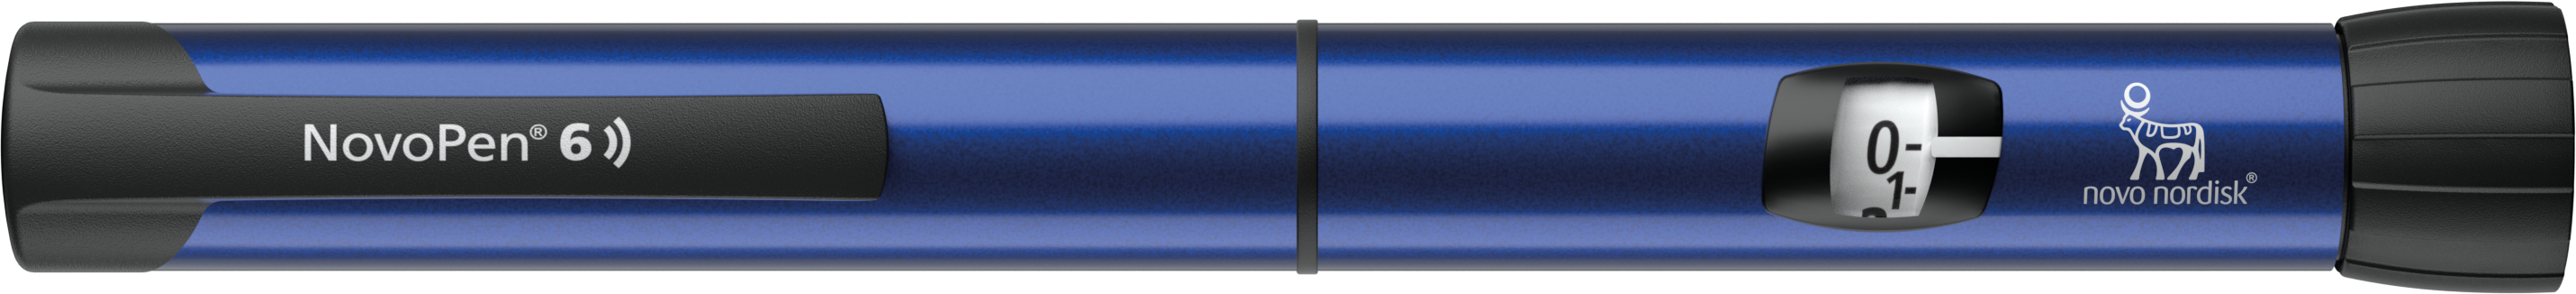 novopen 6 (stylo connectes) couleur bleu